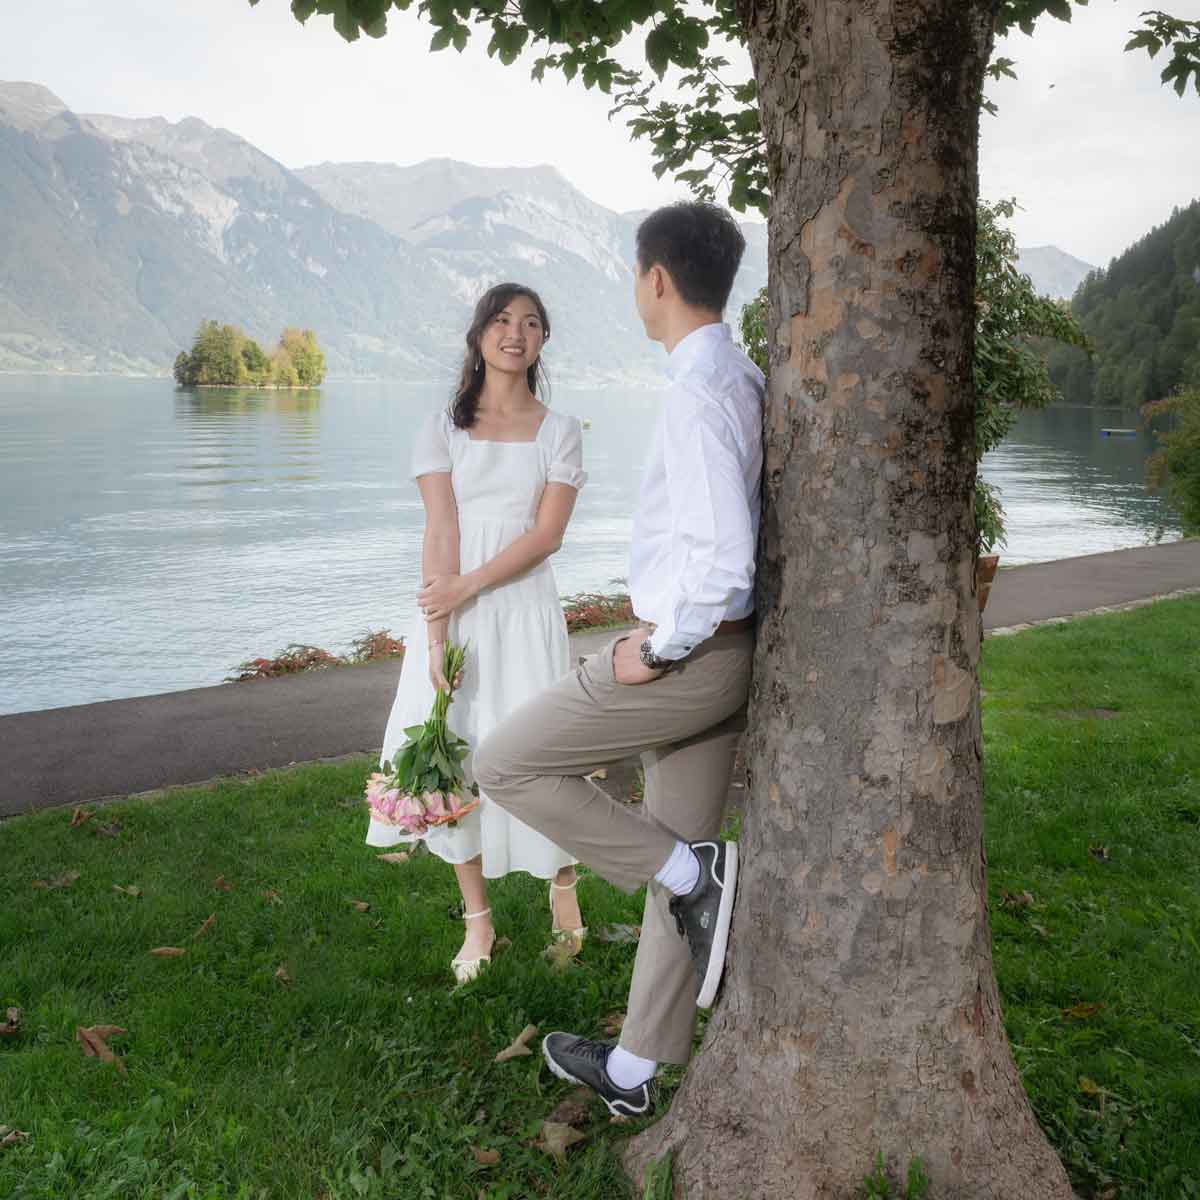 Pre Wedding Photoshoot in Interlaken Switzerland